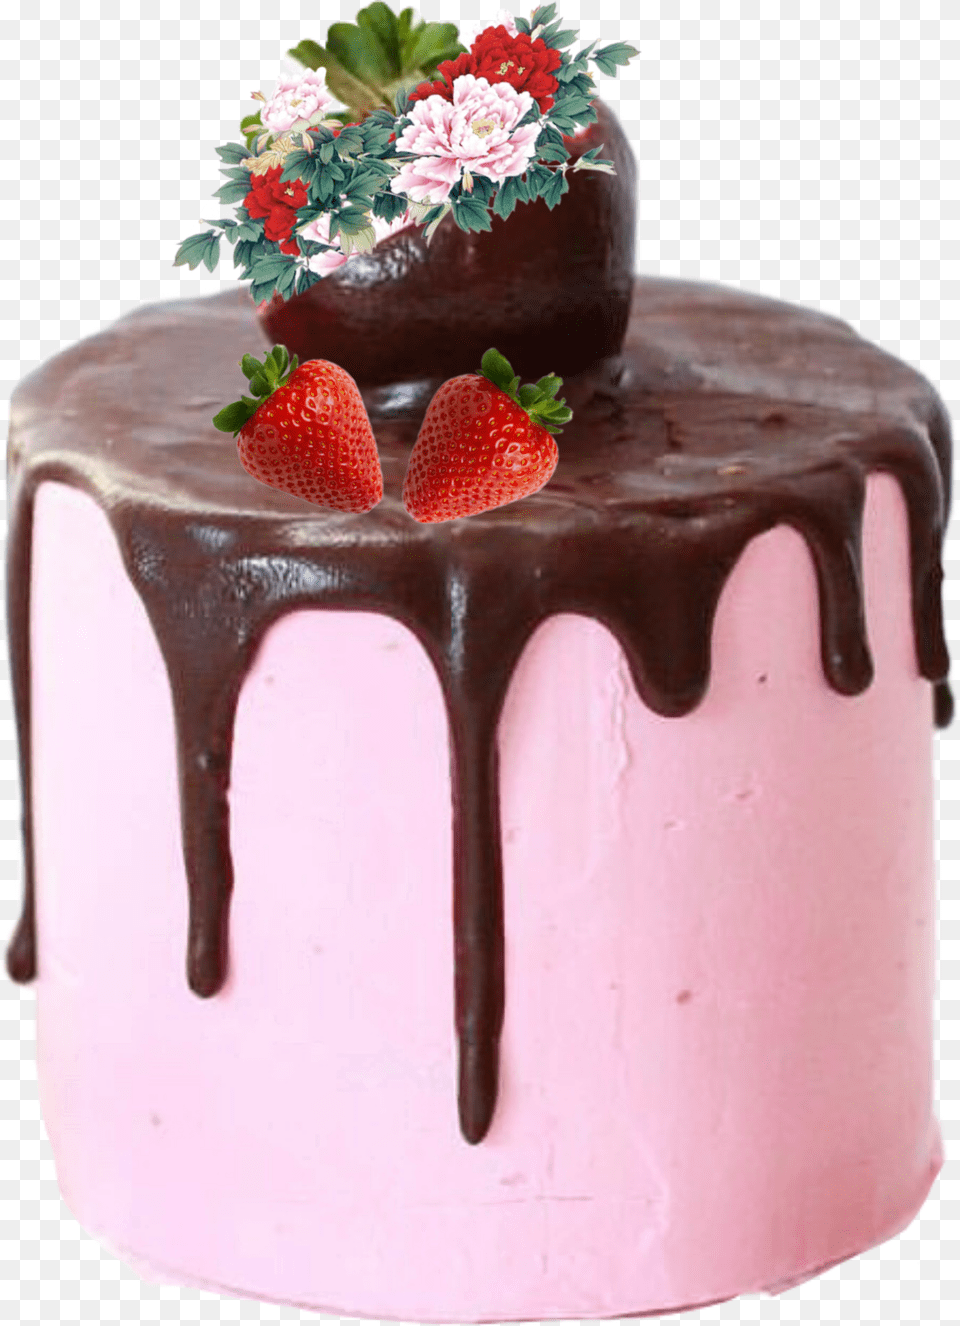 Strawberries Cake Chocolate Chocolate Cake, Birthday Cake, Cream, Dessert, Food Free Png